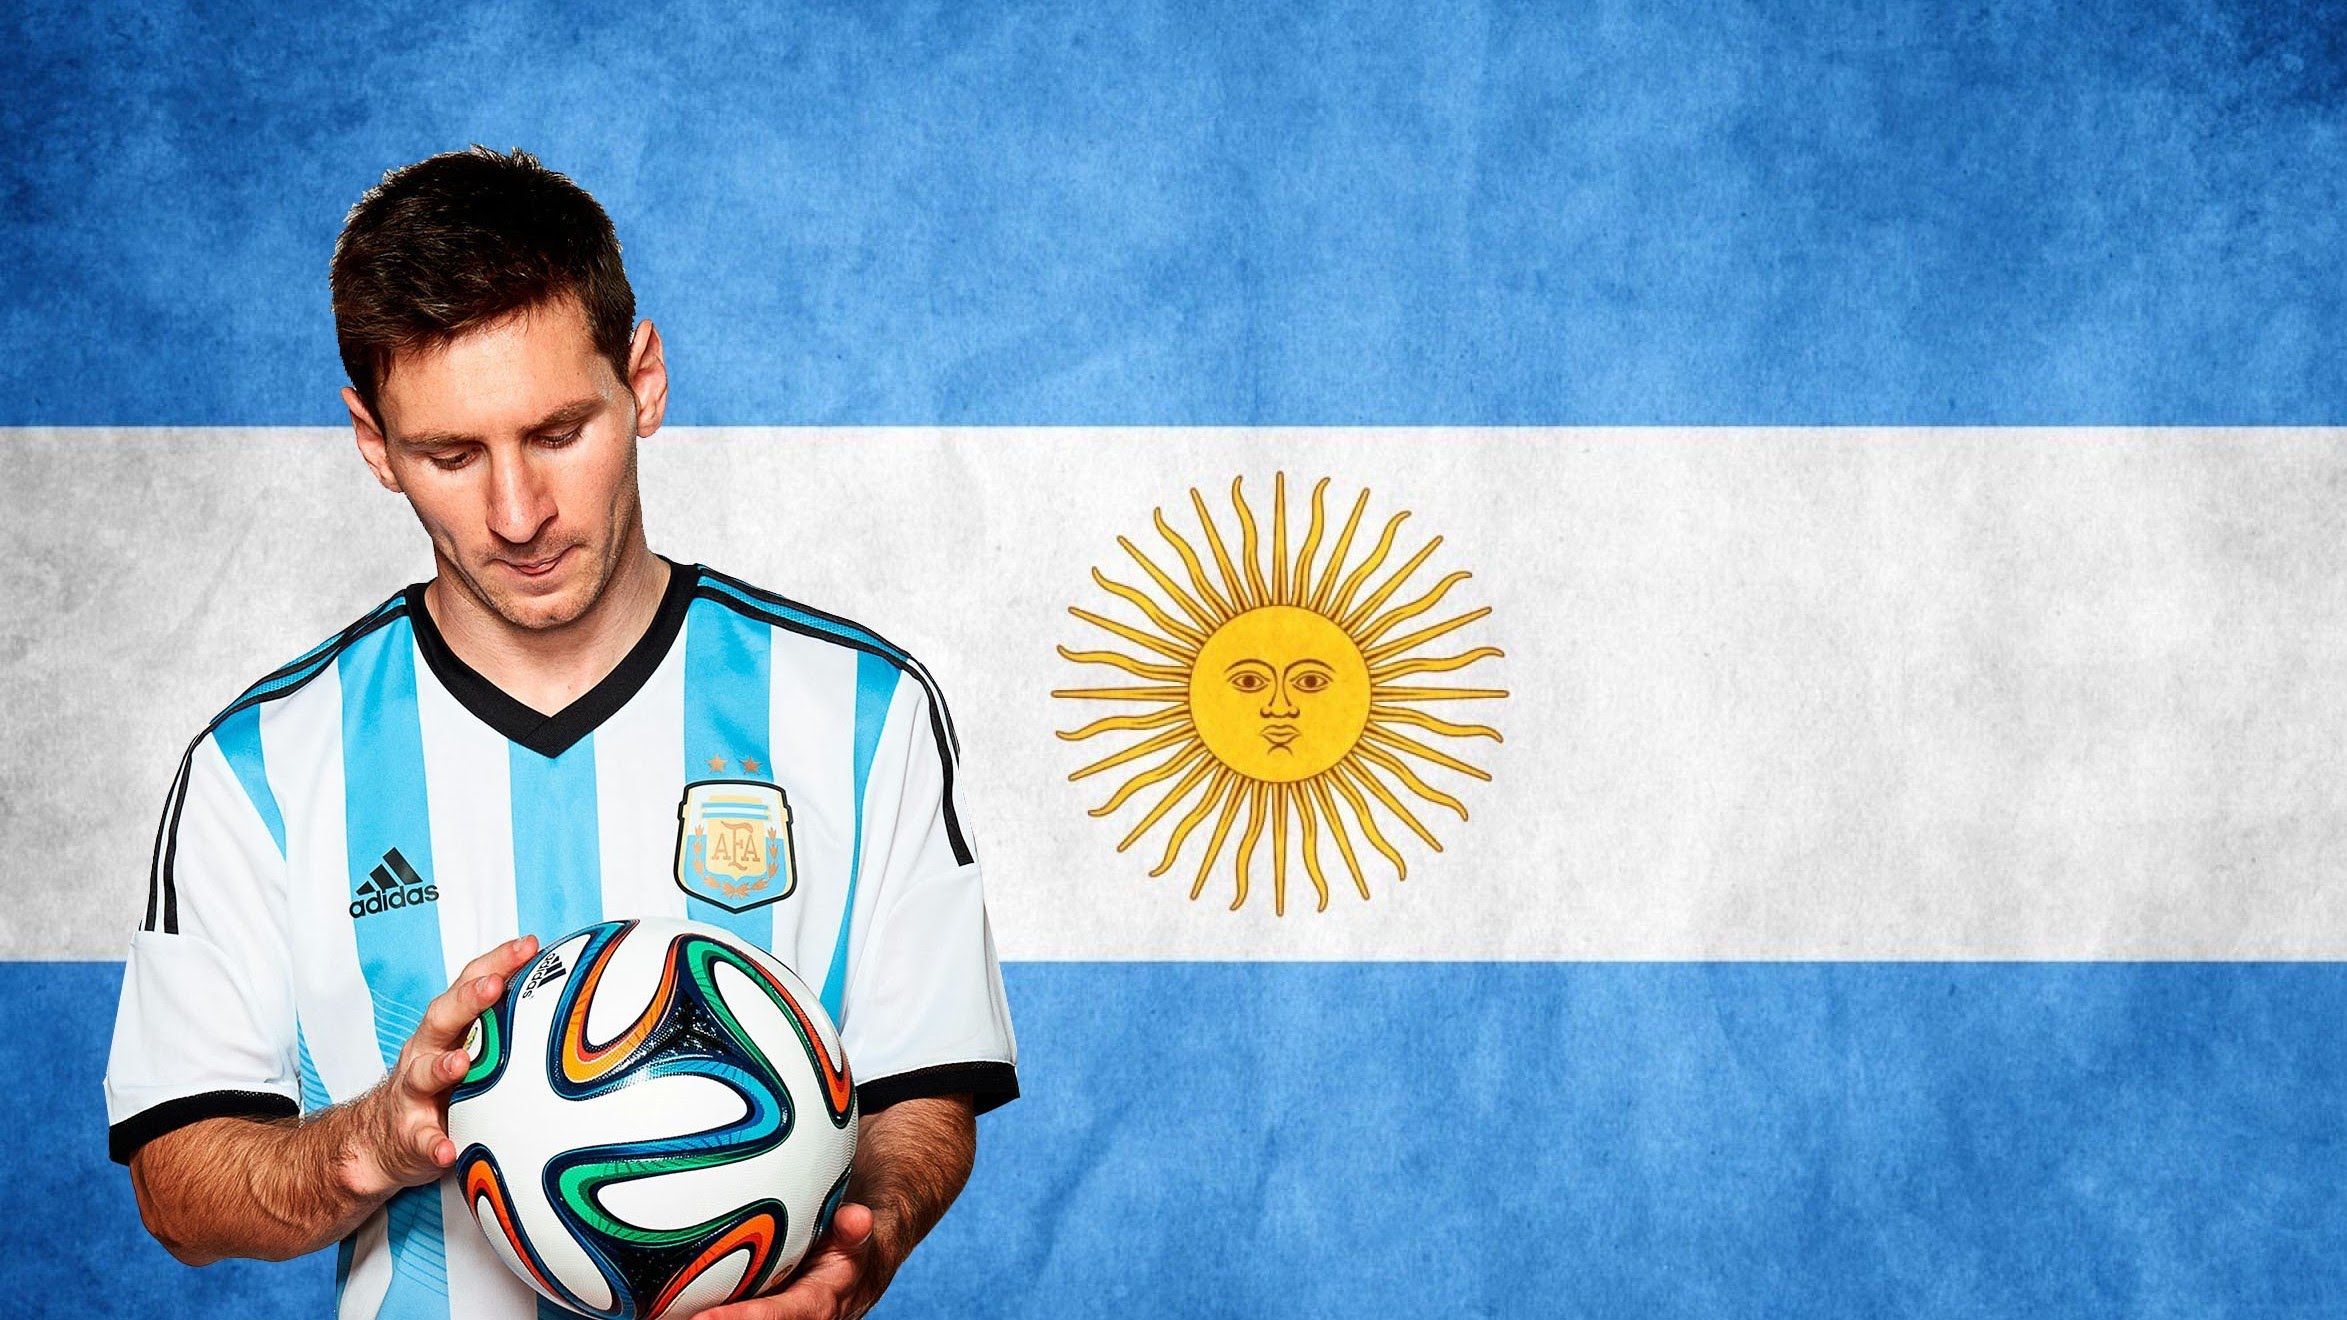  “Amo demasiado a mi país”: Así anuncia Messi su regreso